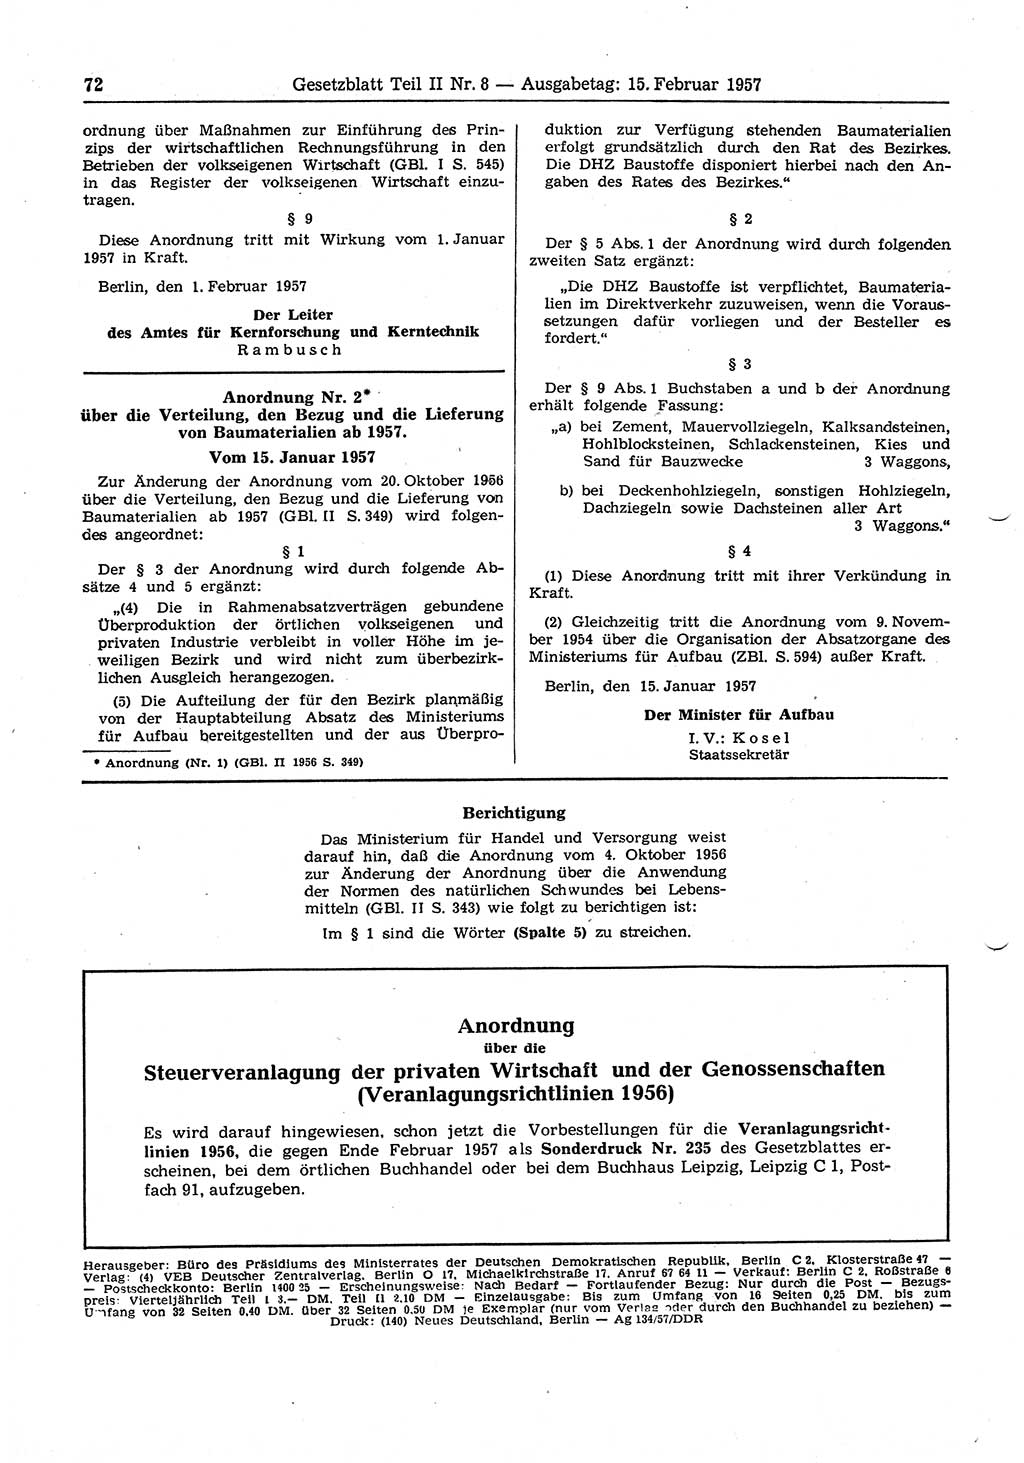 Gesetzblatt (GBl.) der Deutschen Demokratischen Republik (DDR) Teil ⅠⅠ 1957, Seite 72 (GBl. DDR ⅠⅠ 1957, S. 72)